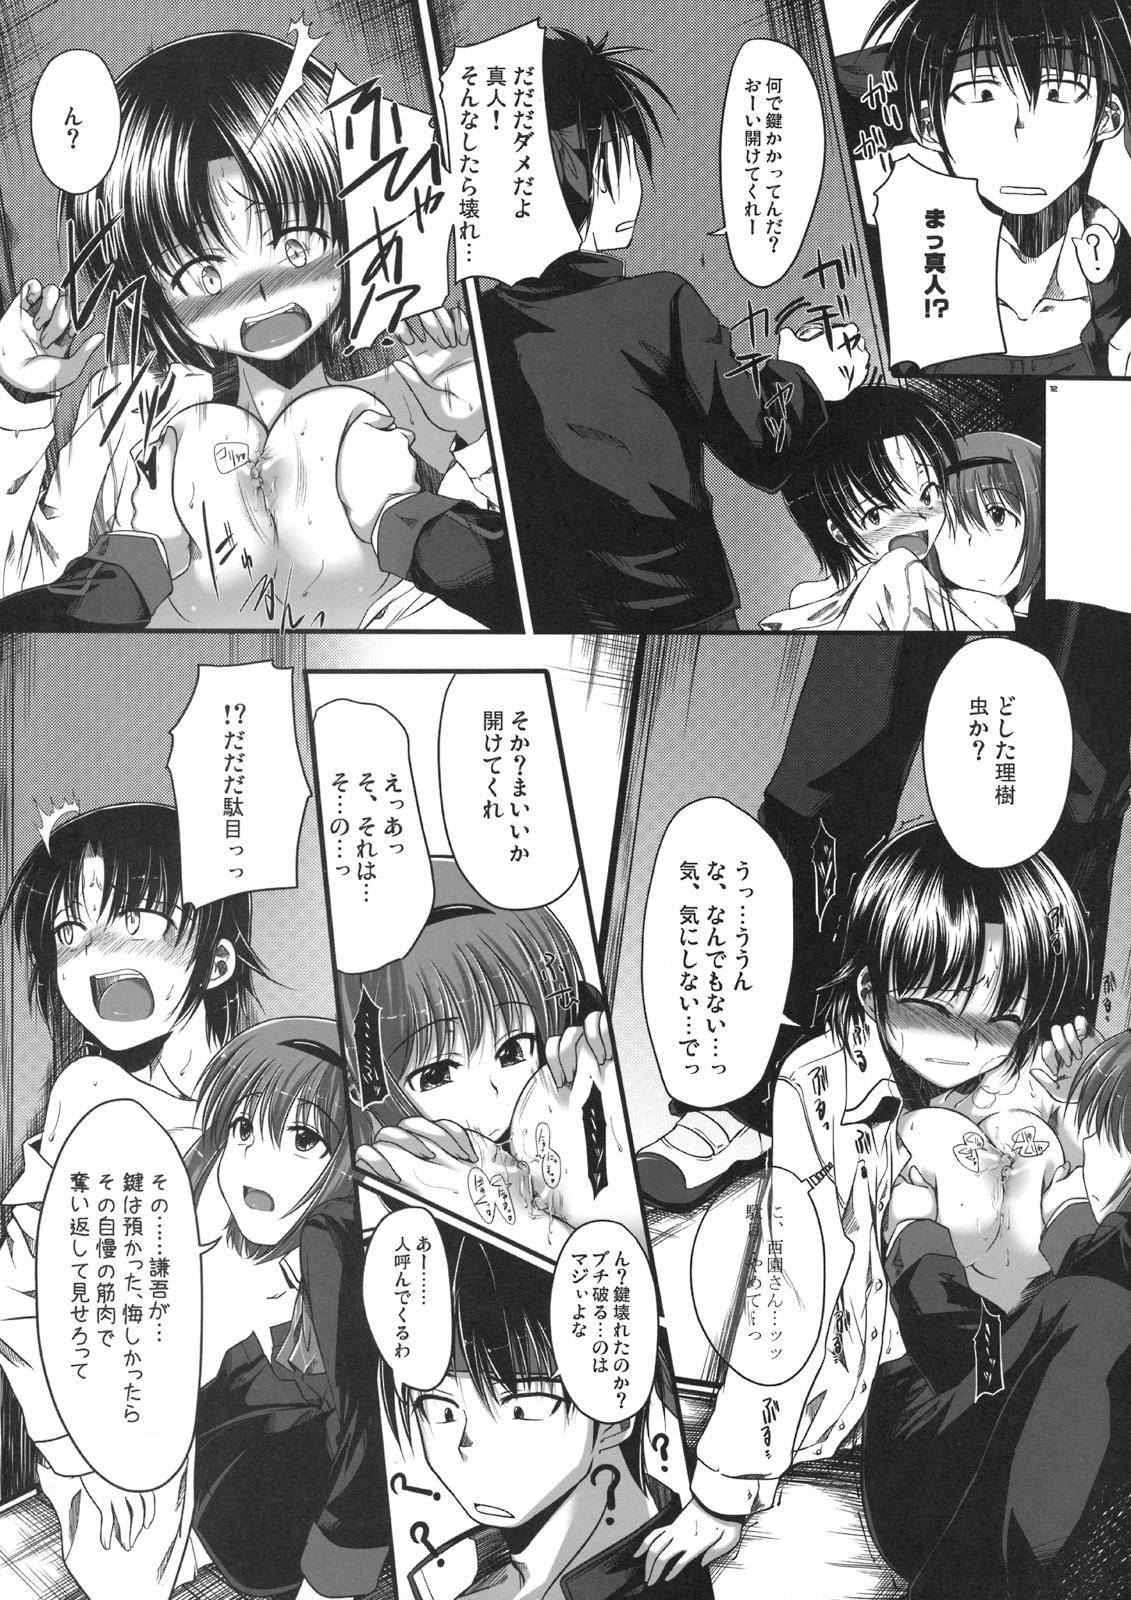 Longhair Rikyuuru - Little busters Classroom - Page 11